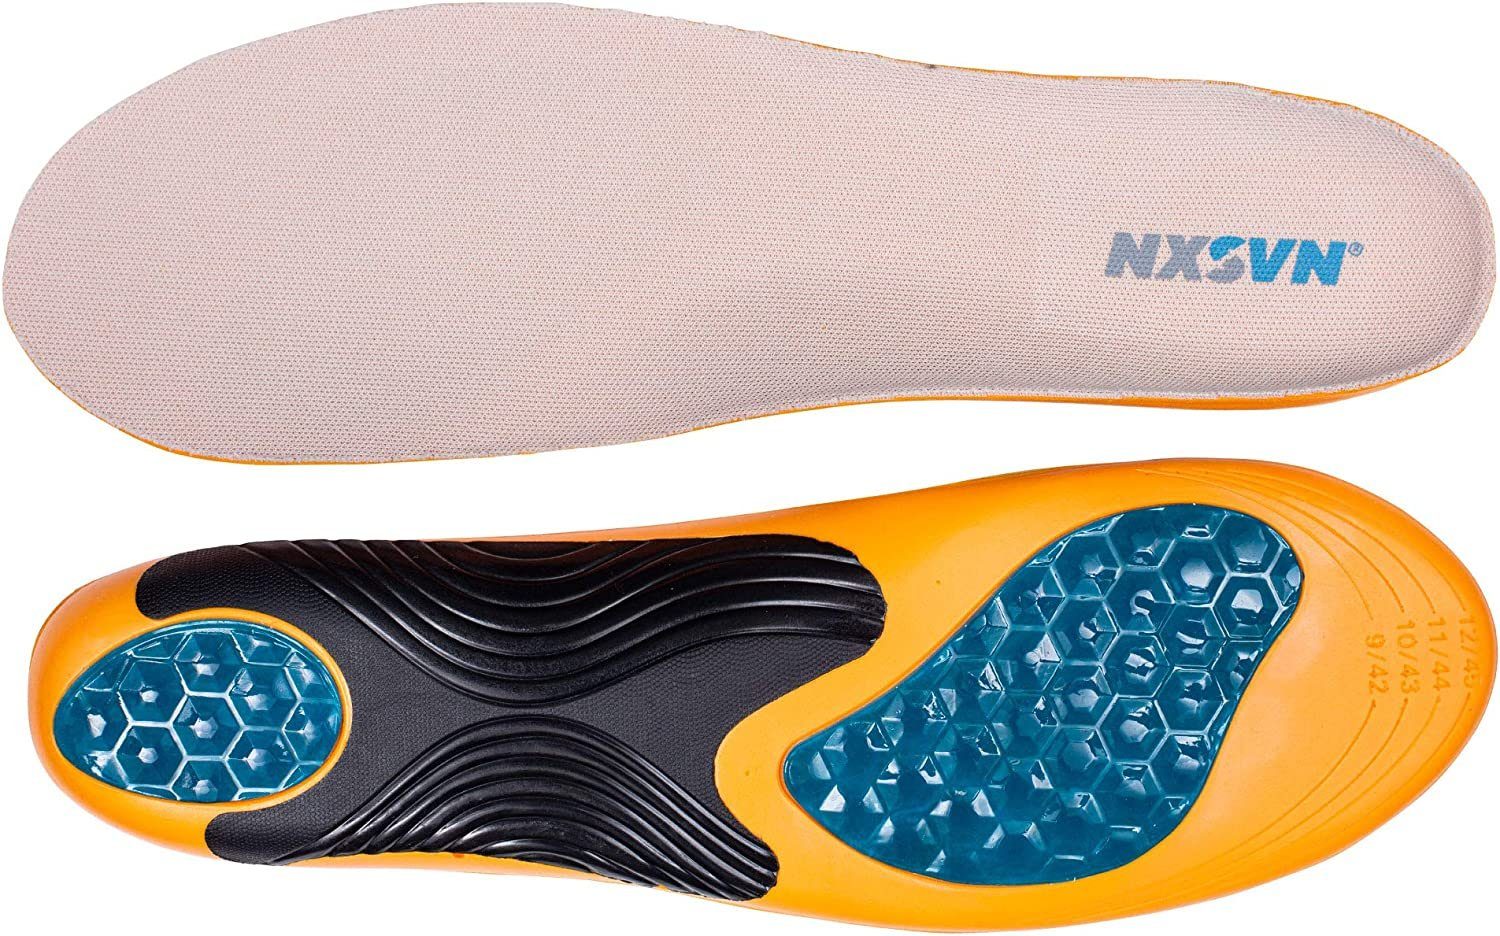 Rubberneck NXSVN Gelsohlen Work Einlegesohlen Gelsohle Schuhsohle für  Arbeitsschuhe (1 Paar), speziell für Stehen/Gehen auf harten Böden